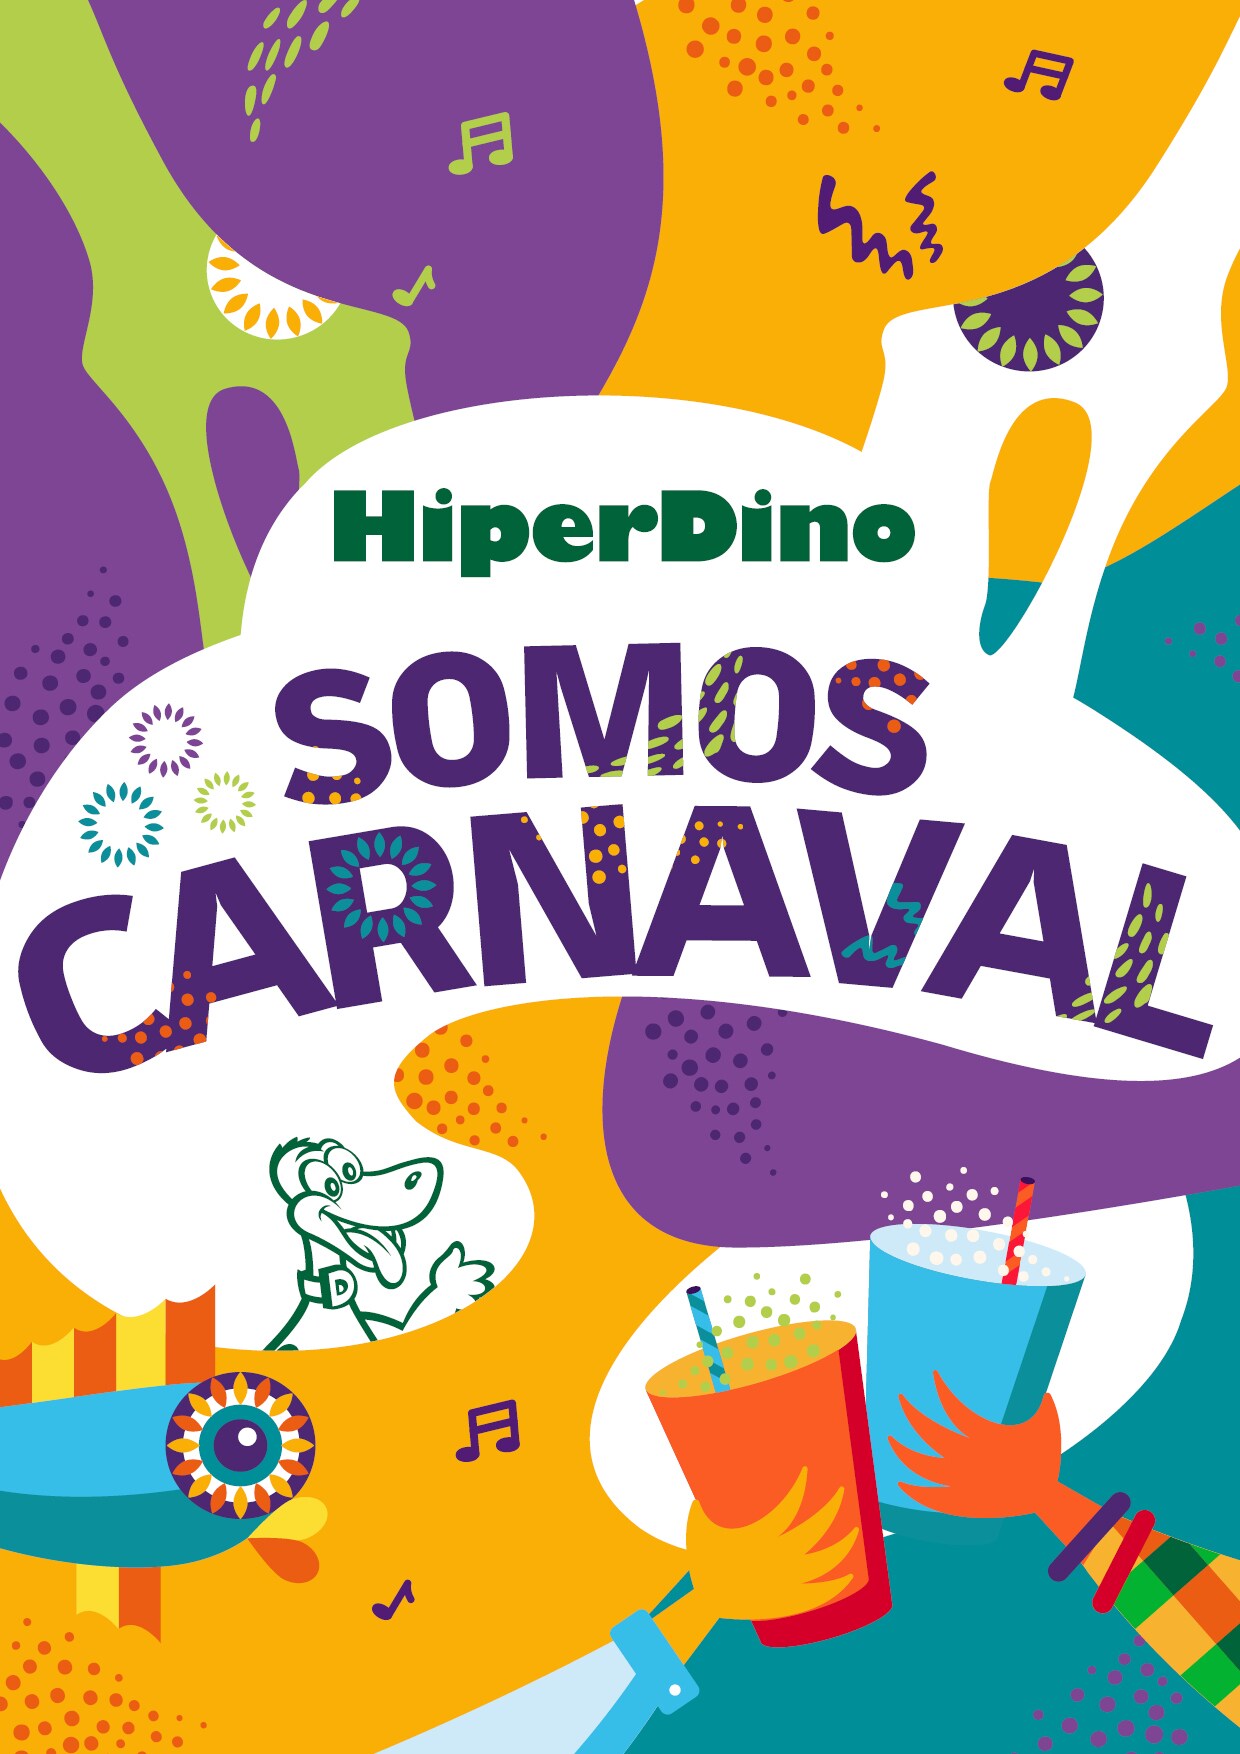 El Carnaval de Santa Cruz de Tenerife se viste de gala con el patrocinio de HiperDino